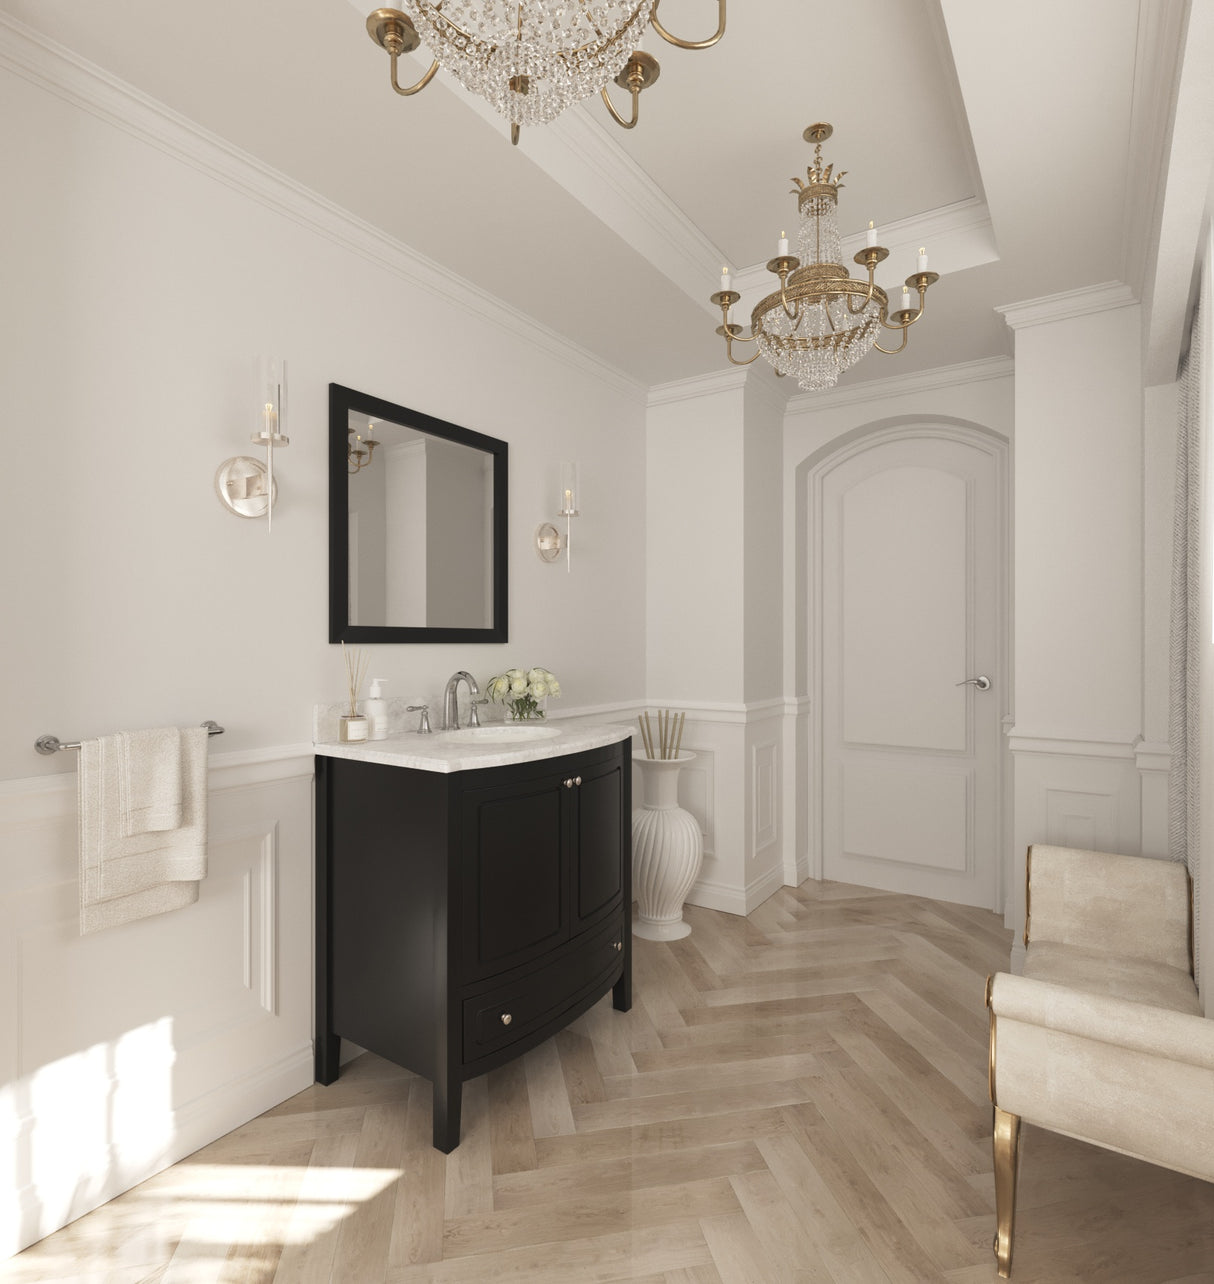 Estella 32" Espresso Bathroom Vanity with White Carrara Marble Countertop Laviva 3130709-32E-WC